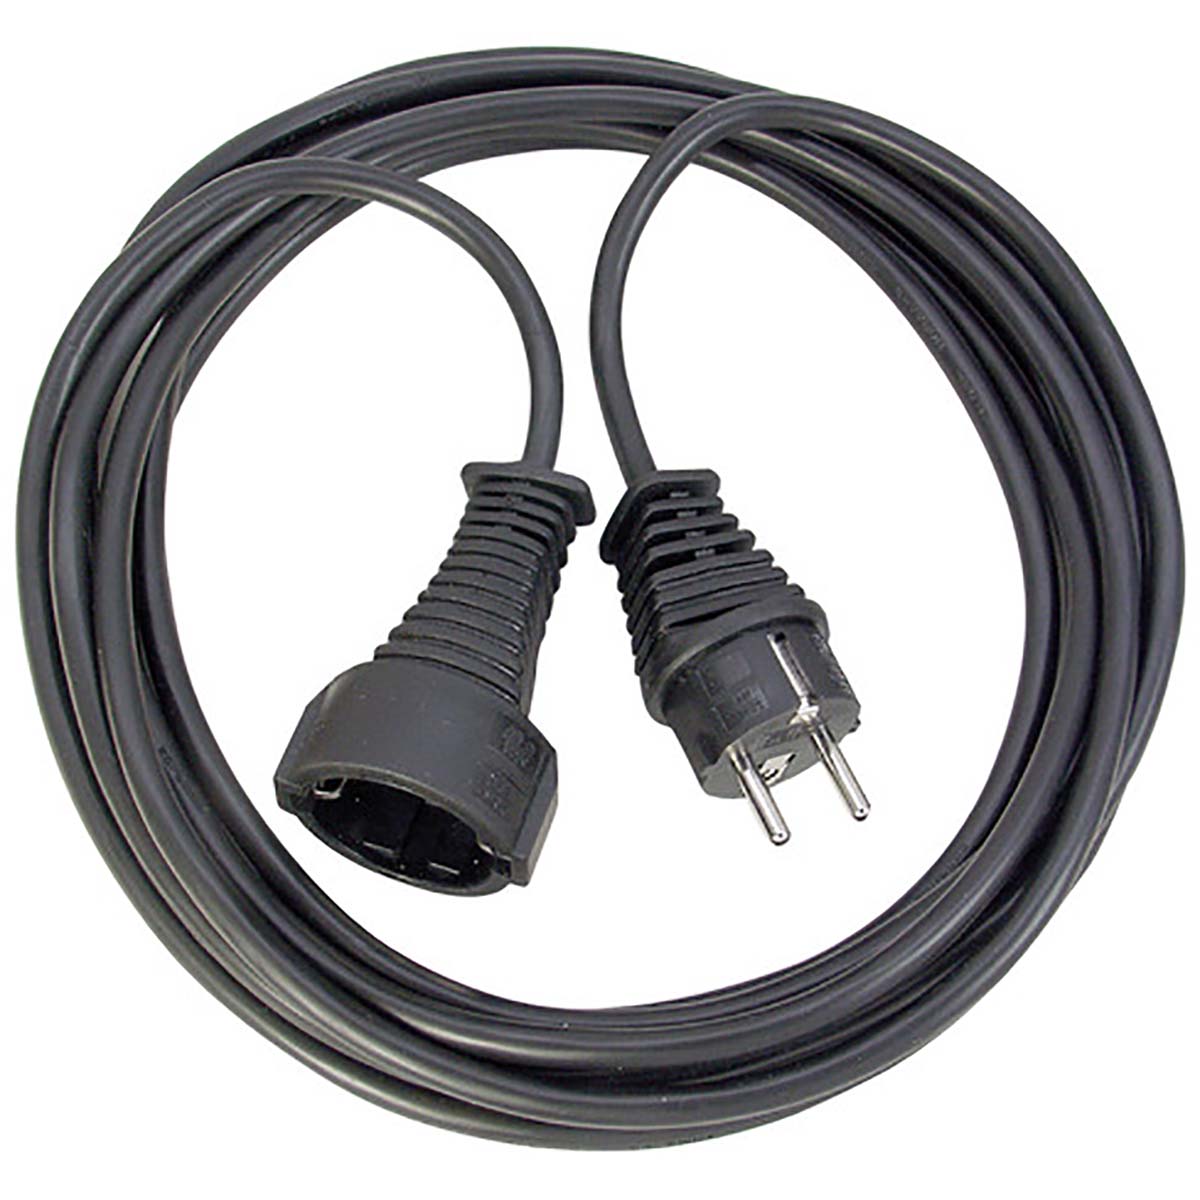 Cable de extensión con enchufe plano cable de alimentación con conexión a  tierra